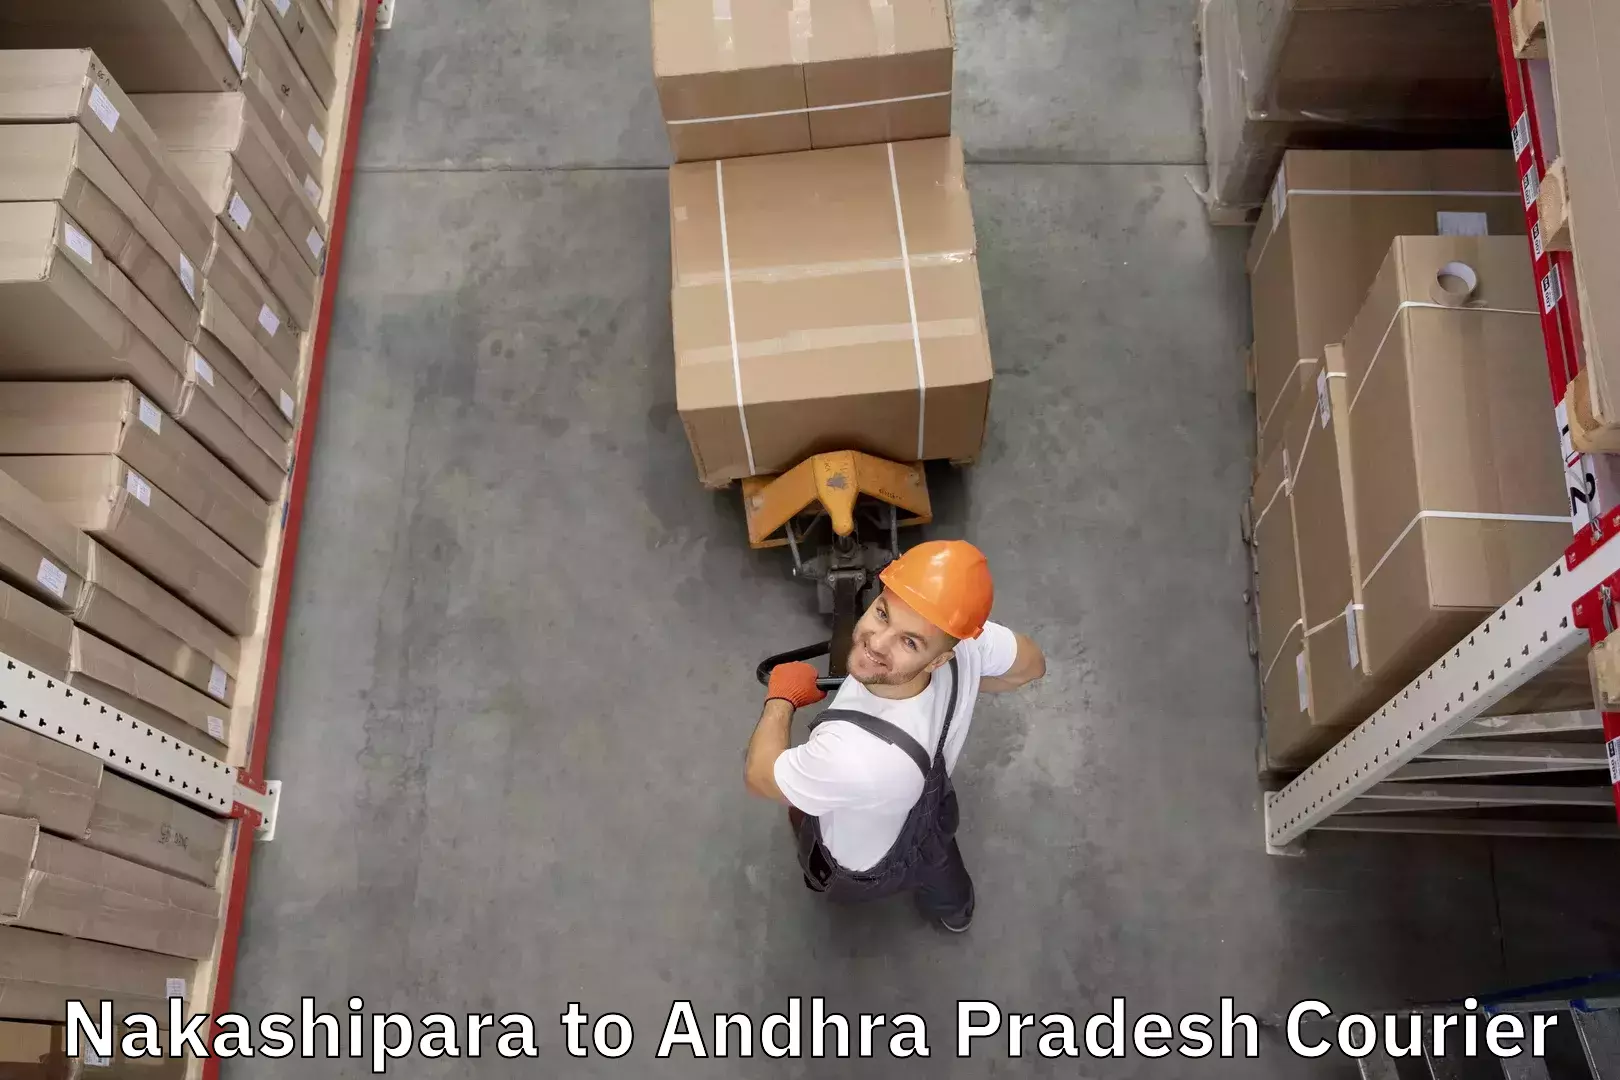 Baggage relocation service Nakashipara to Andhra Pradesh